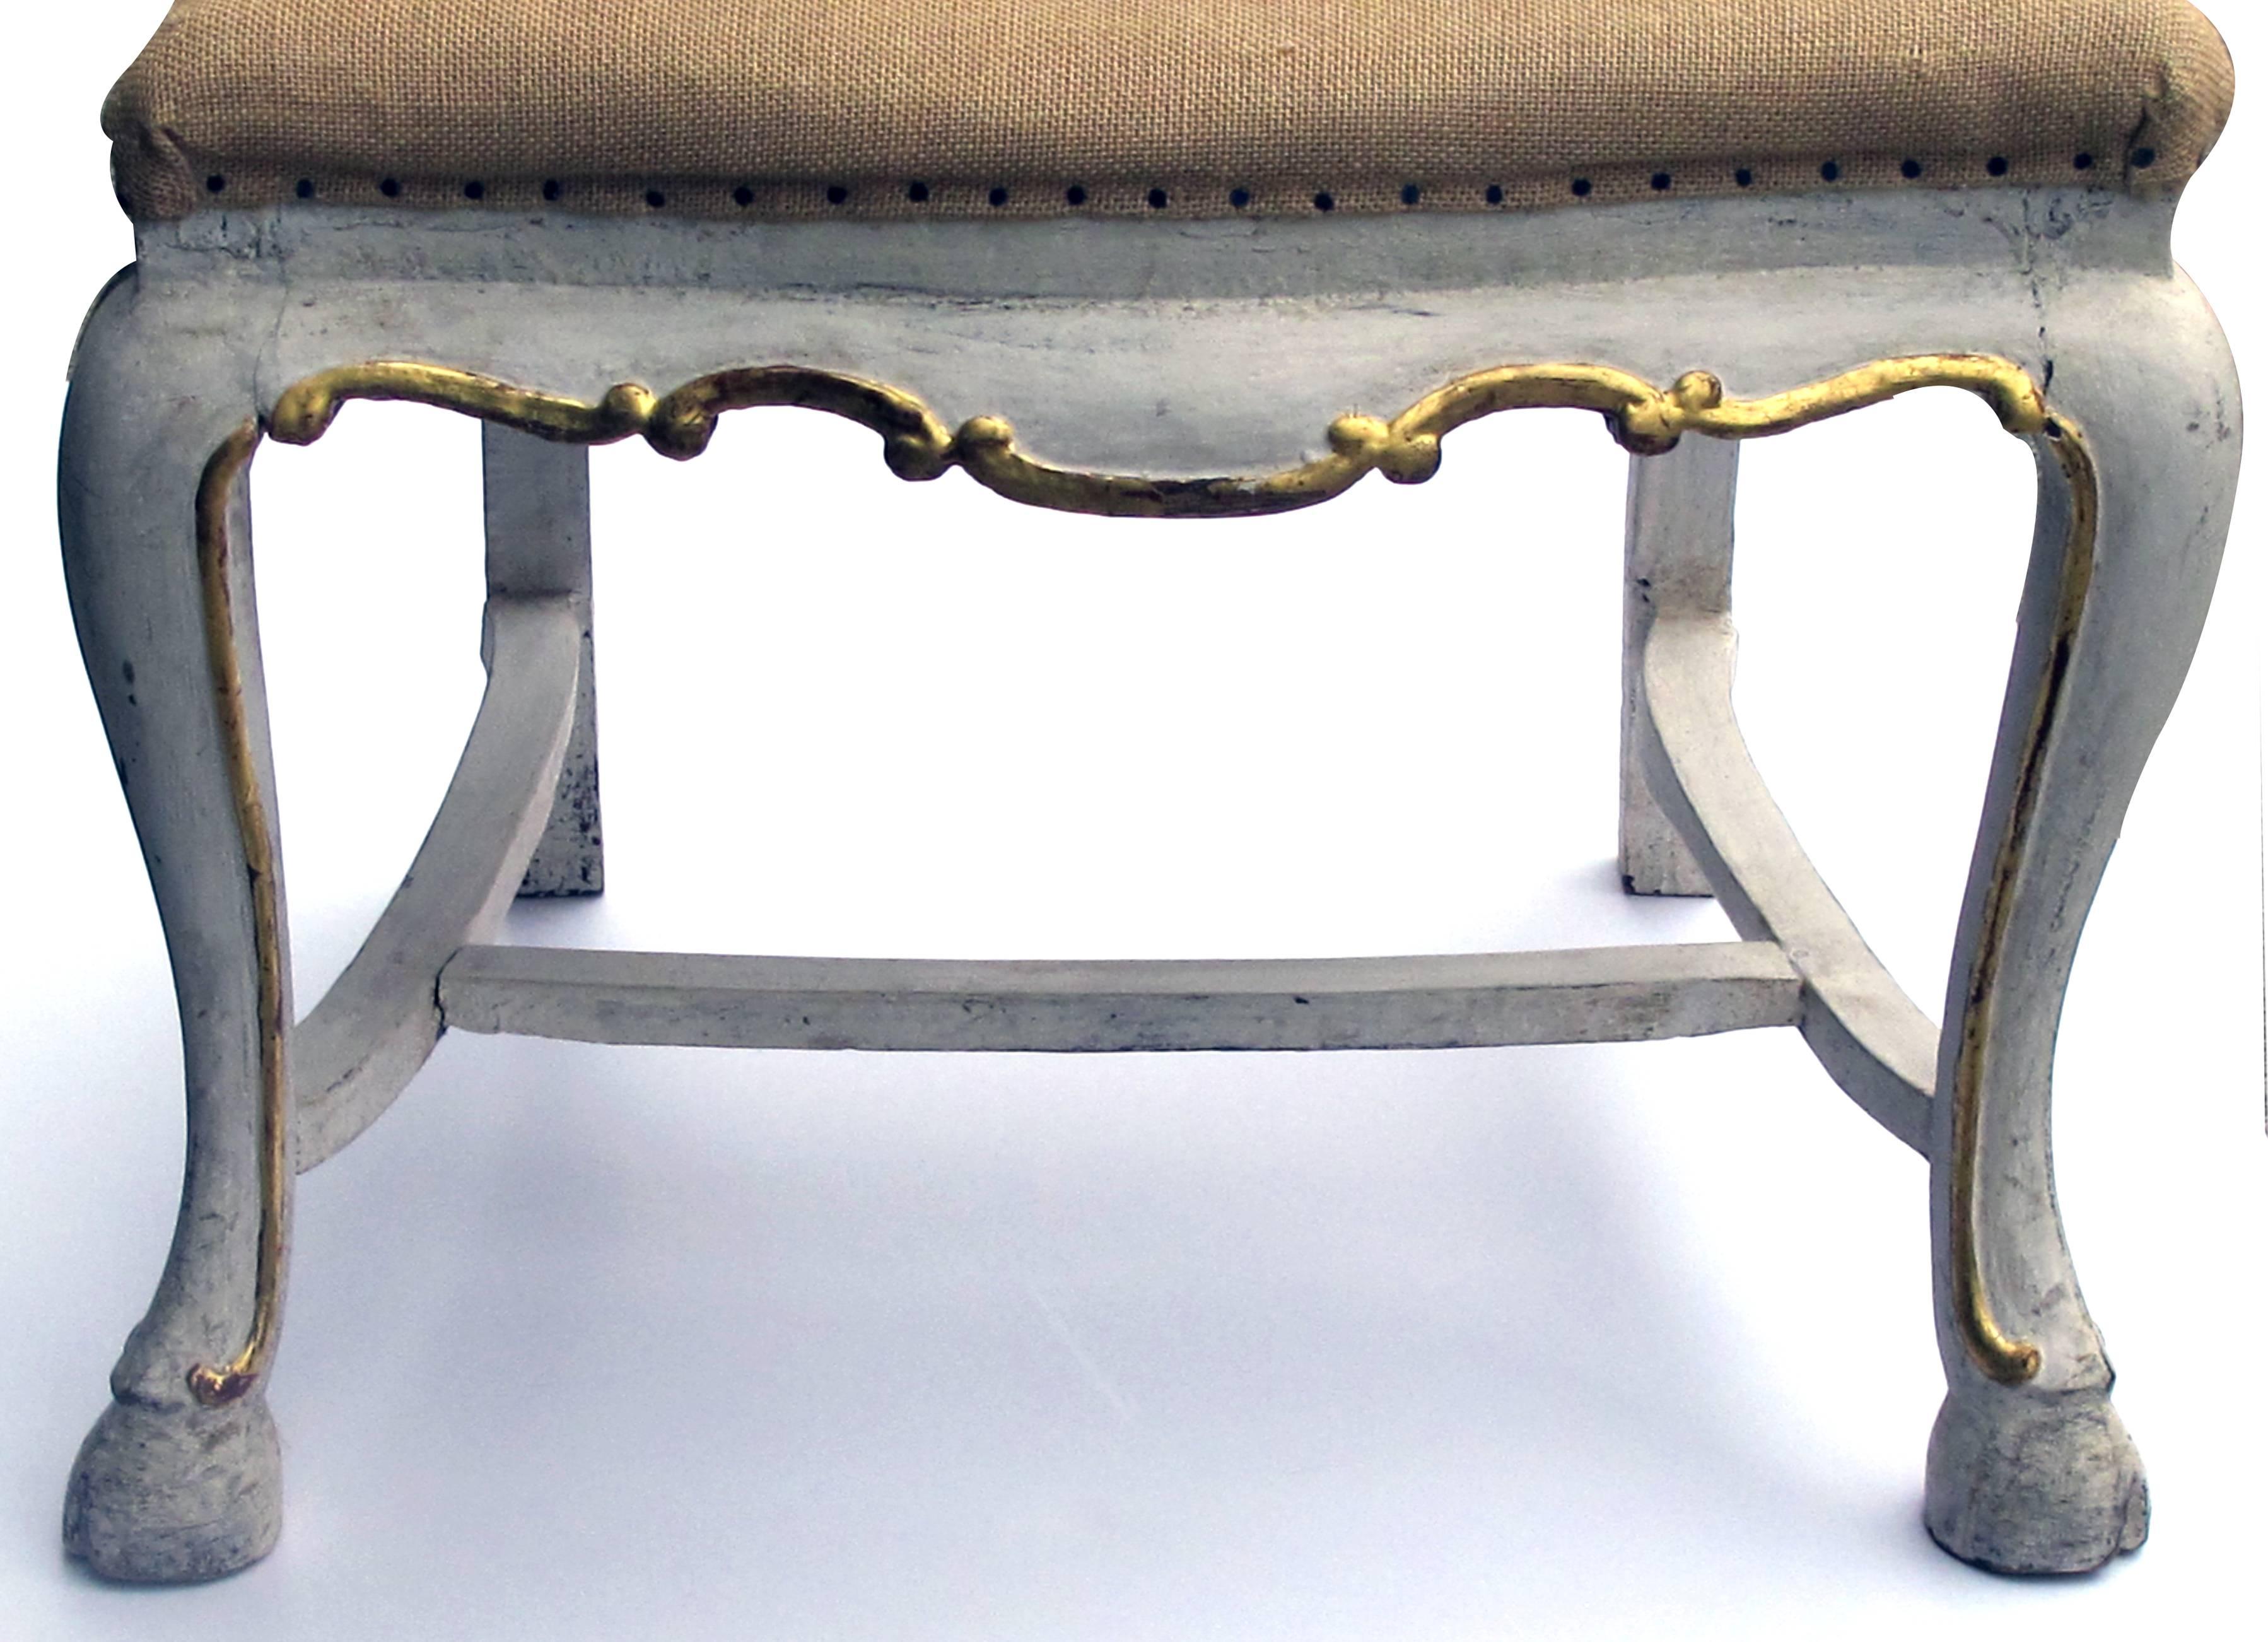 Ein formschöner Satz von fünf portugiesischen Rokoko-Seiten- oder Esszimmerstühlen, die elfenbeinfarben bemalt und paketvergoldet sind; jeder mit einem gewölbten, verschnörkelten Kamm über einer vasiförmigen Leiste und einem mit Sackleinen bezogenen